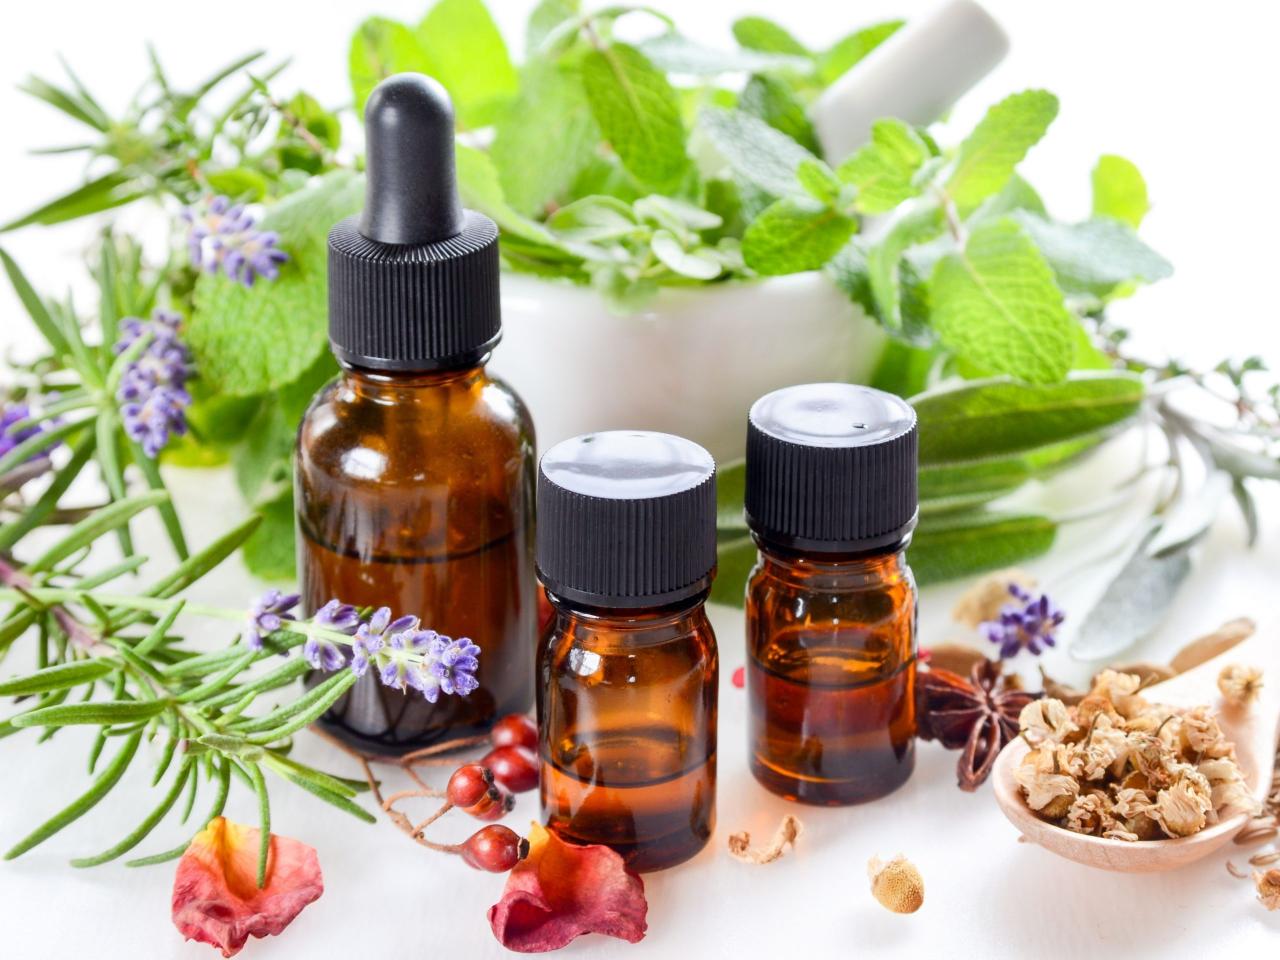 Massage aromatherapy oils 2720 benefits